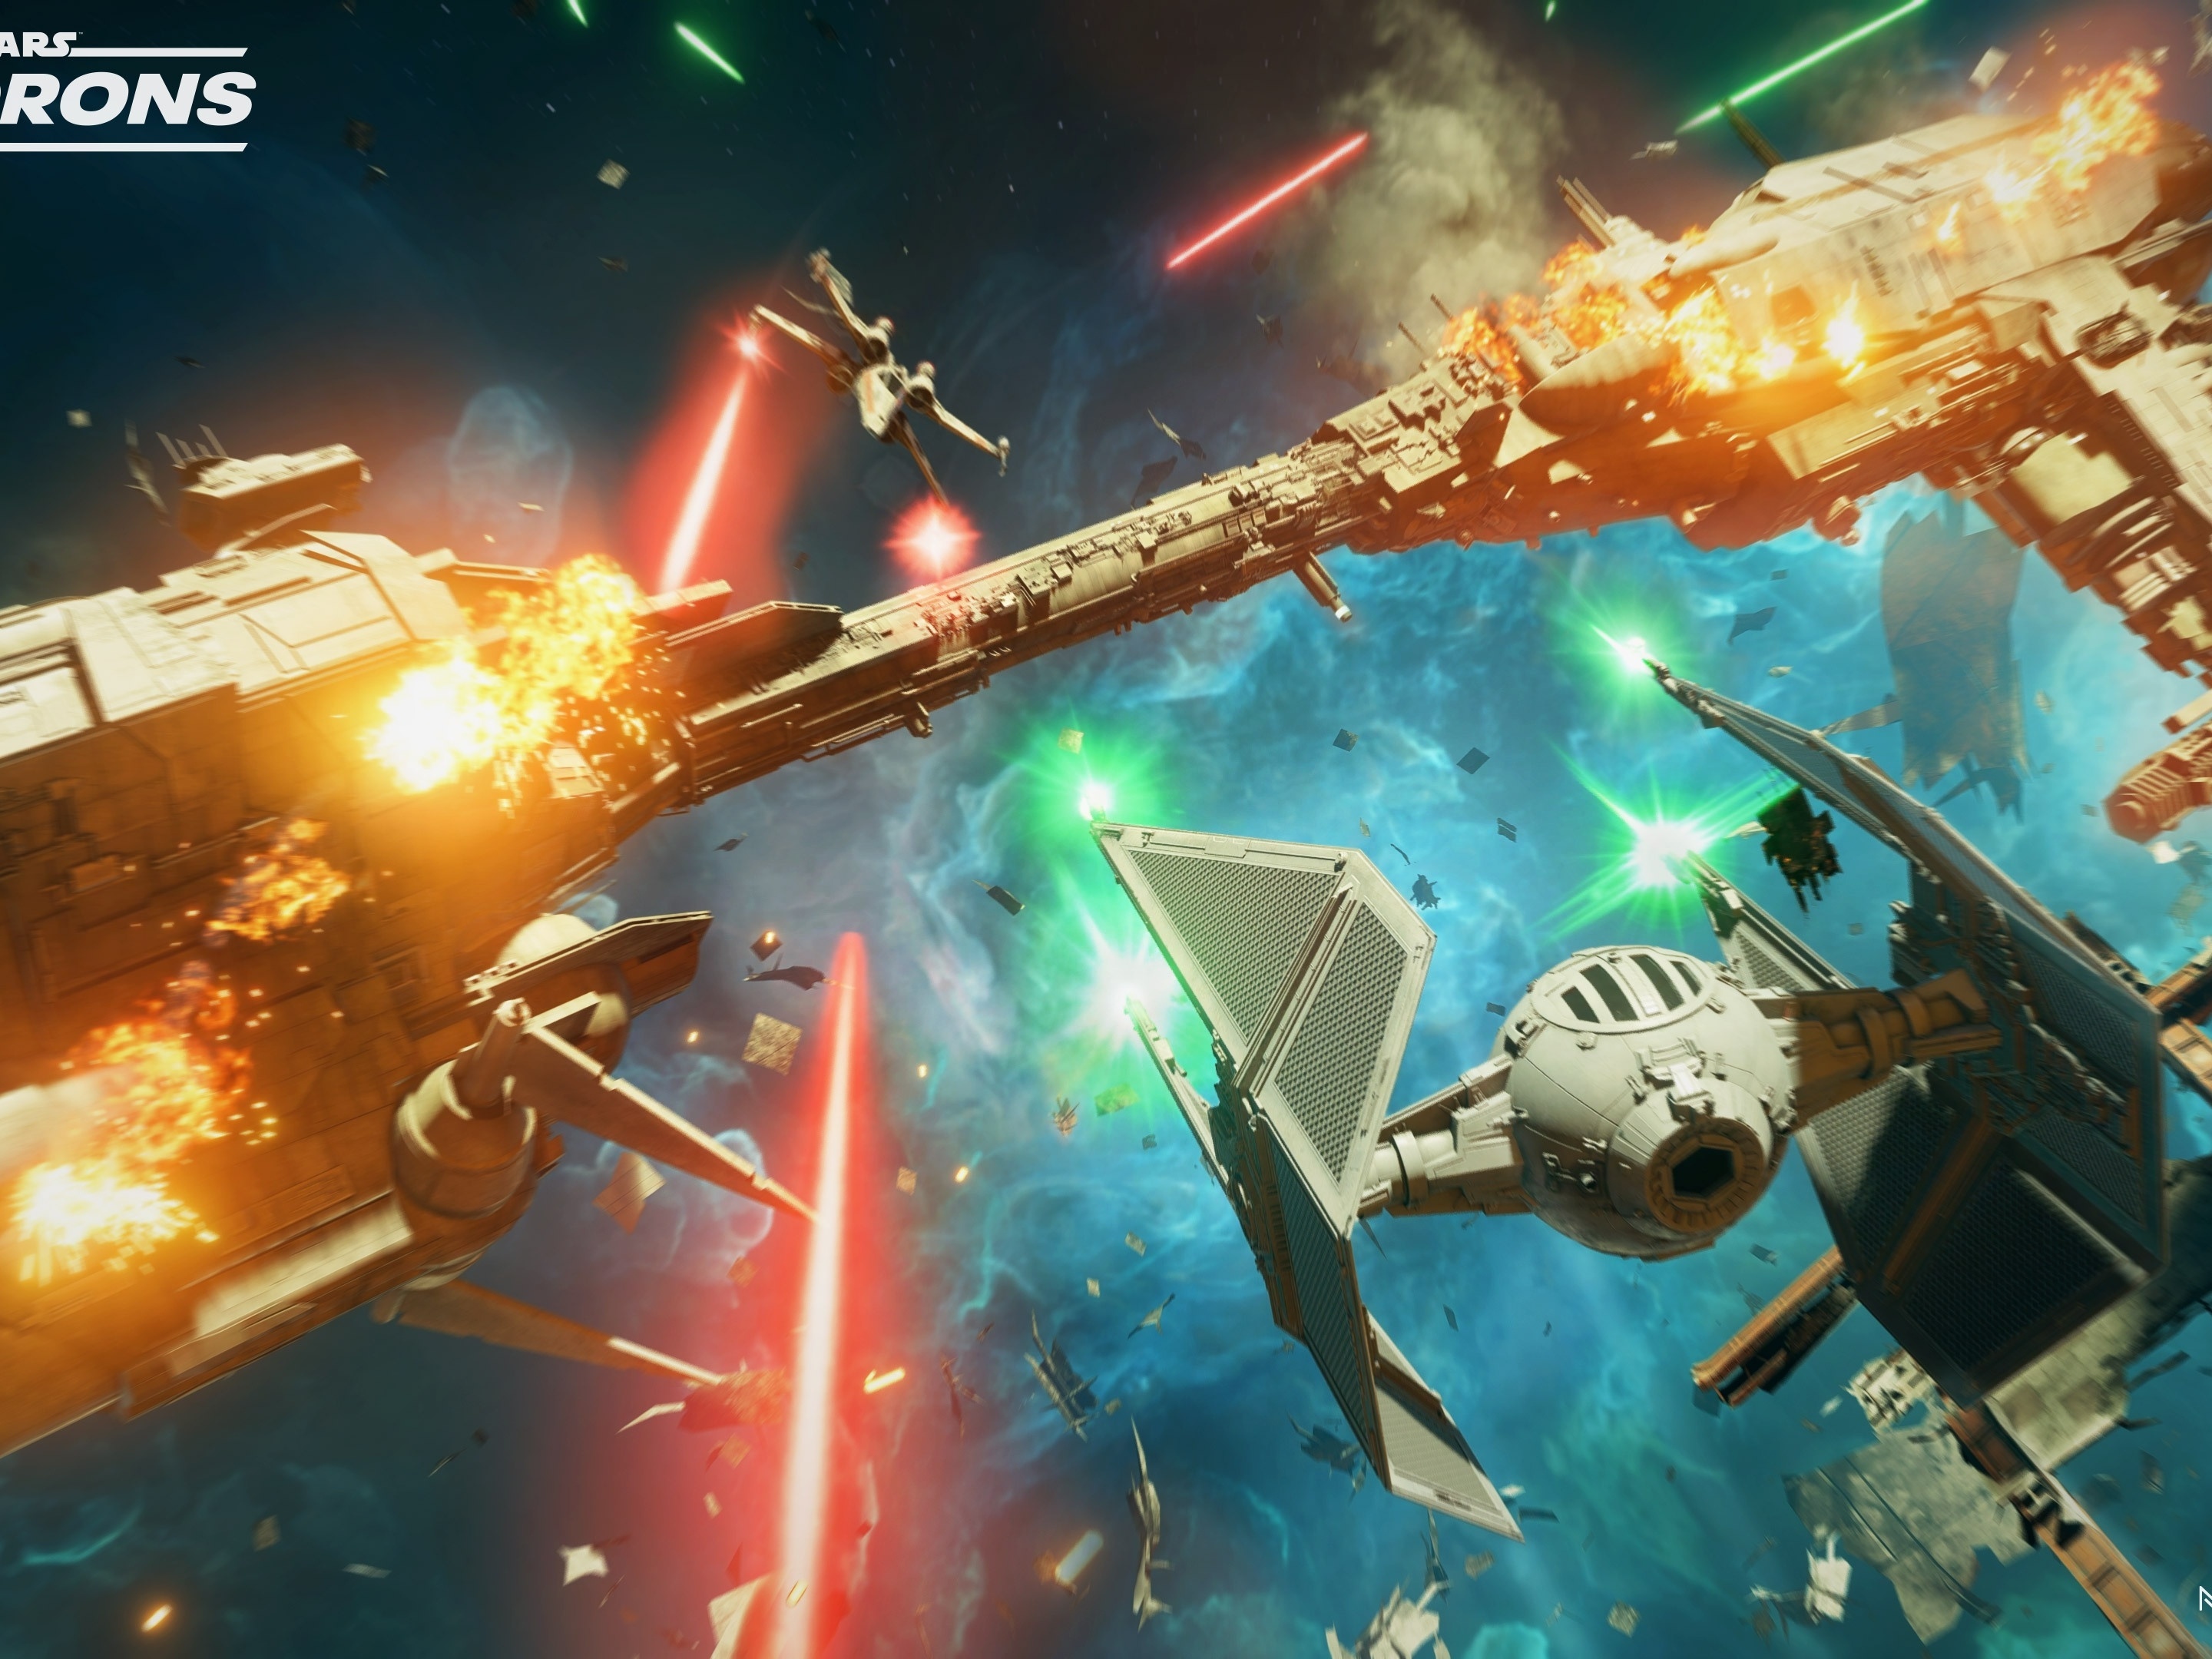 Testamos o beta de Star Wars Battlefront 2, que empolga, mas nem tanto